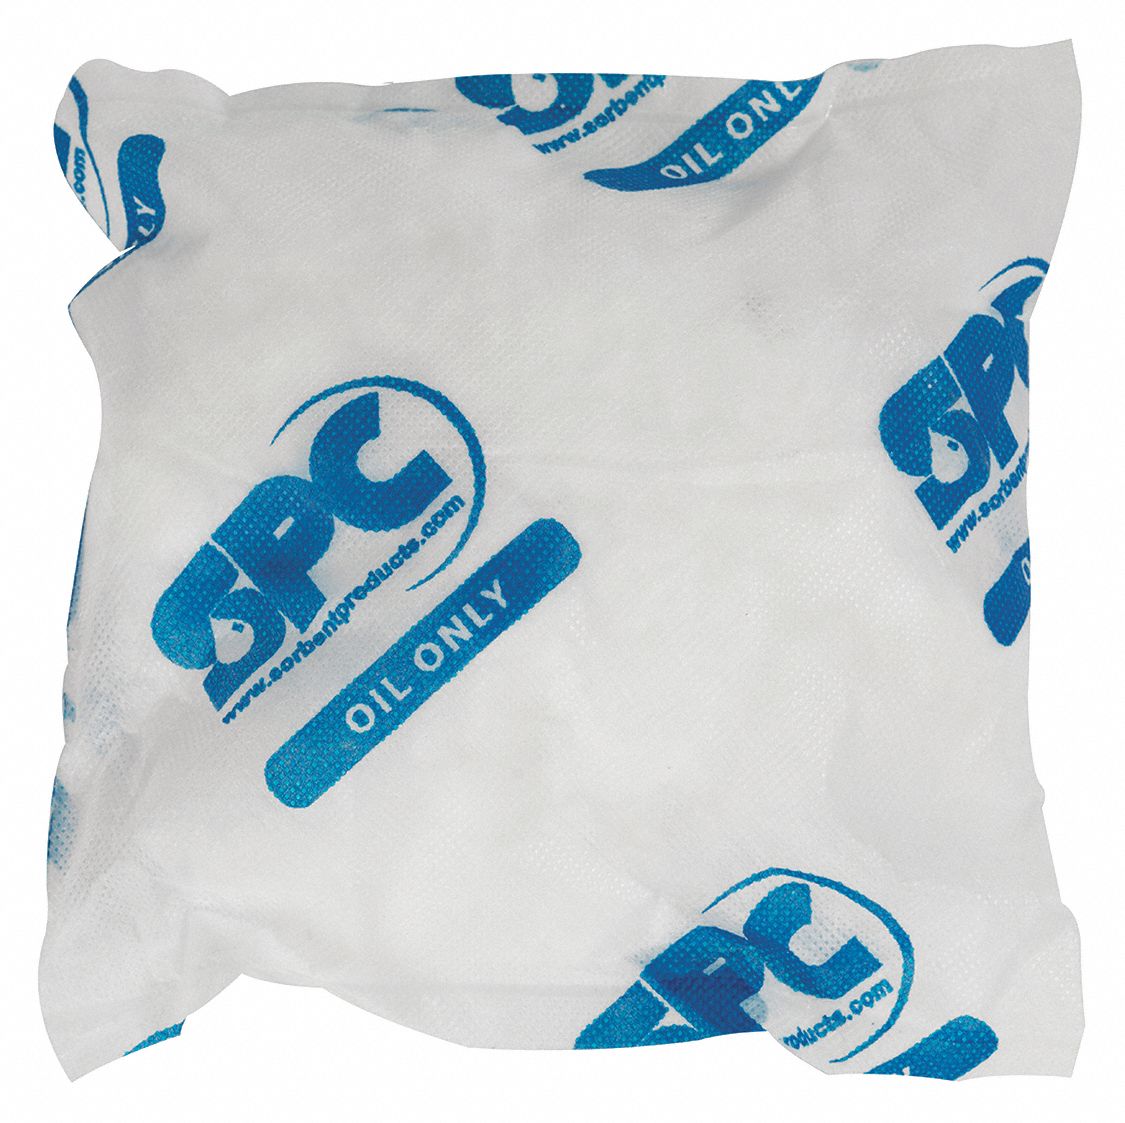 Polypropylene Absorbent Pillow, Fluids Absorbed: Oil Only / Petroleum, 9